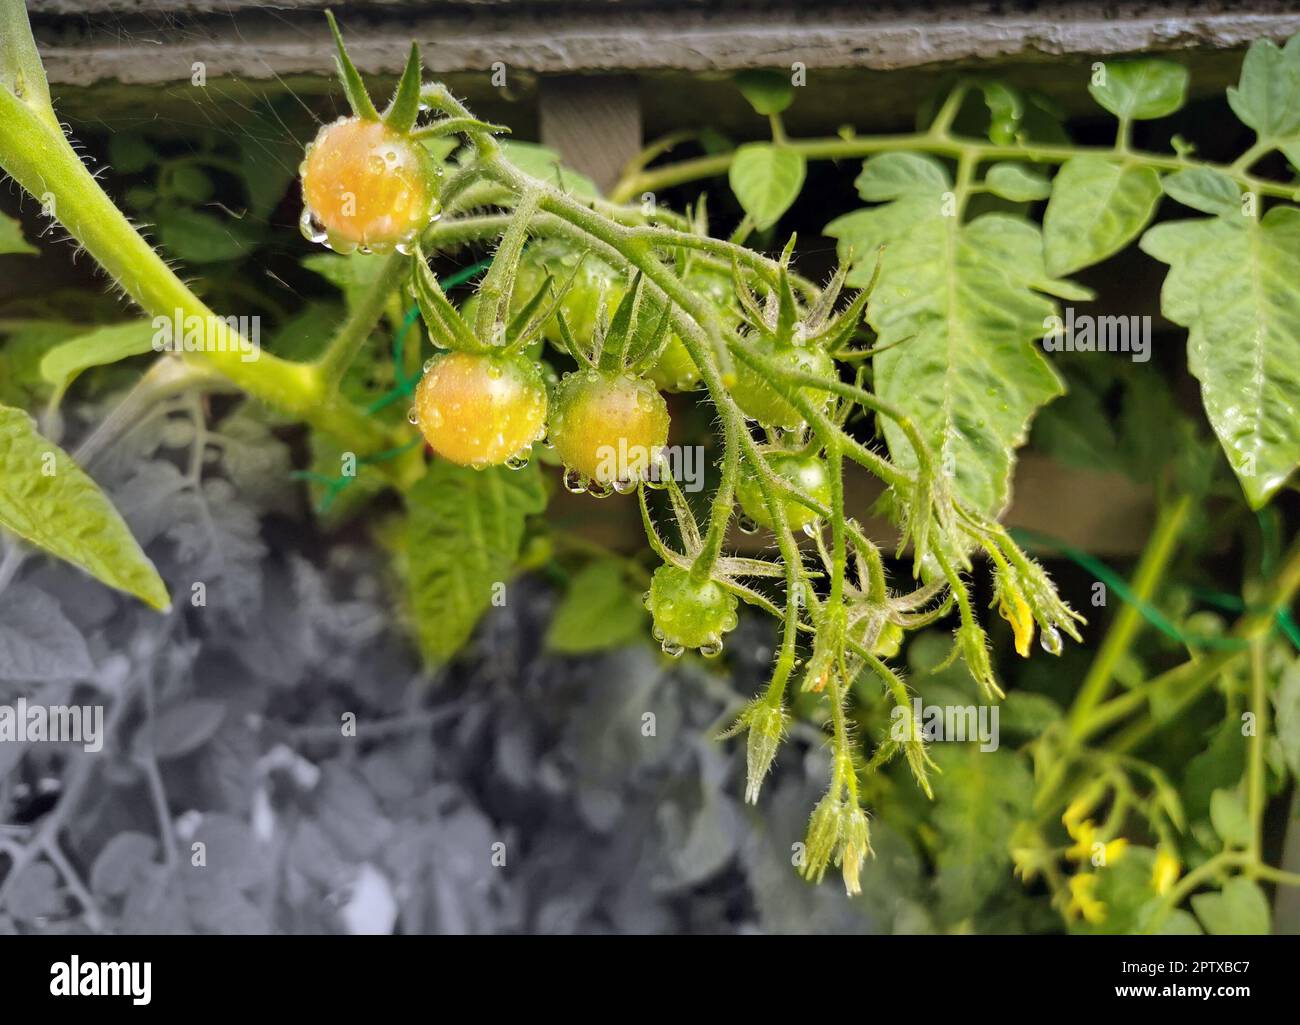 Tomaten, leckere Früchte aber leider noch nicht Reif Stock Photo